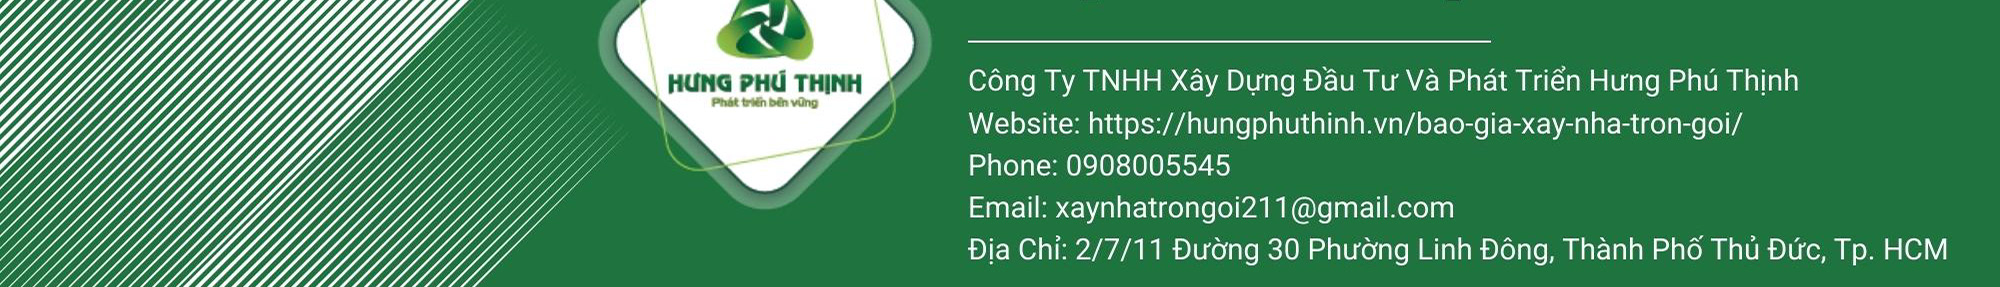 Baner profilu użytkownika Xây Nhà Trọn Gói